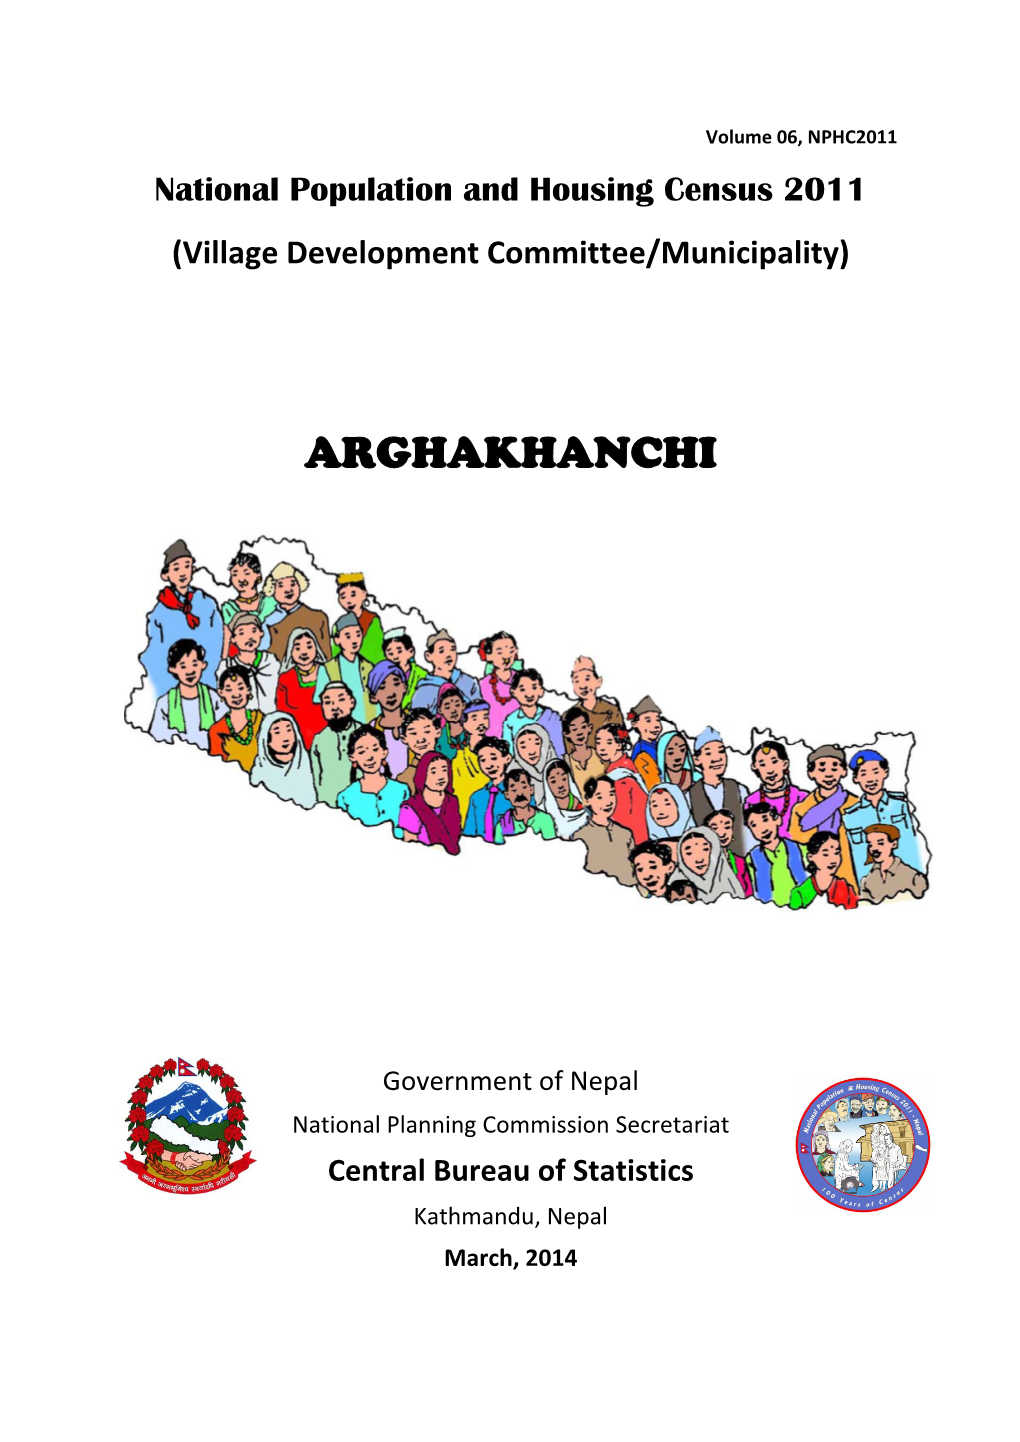 Arghakhanchi